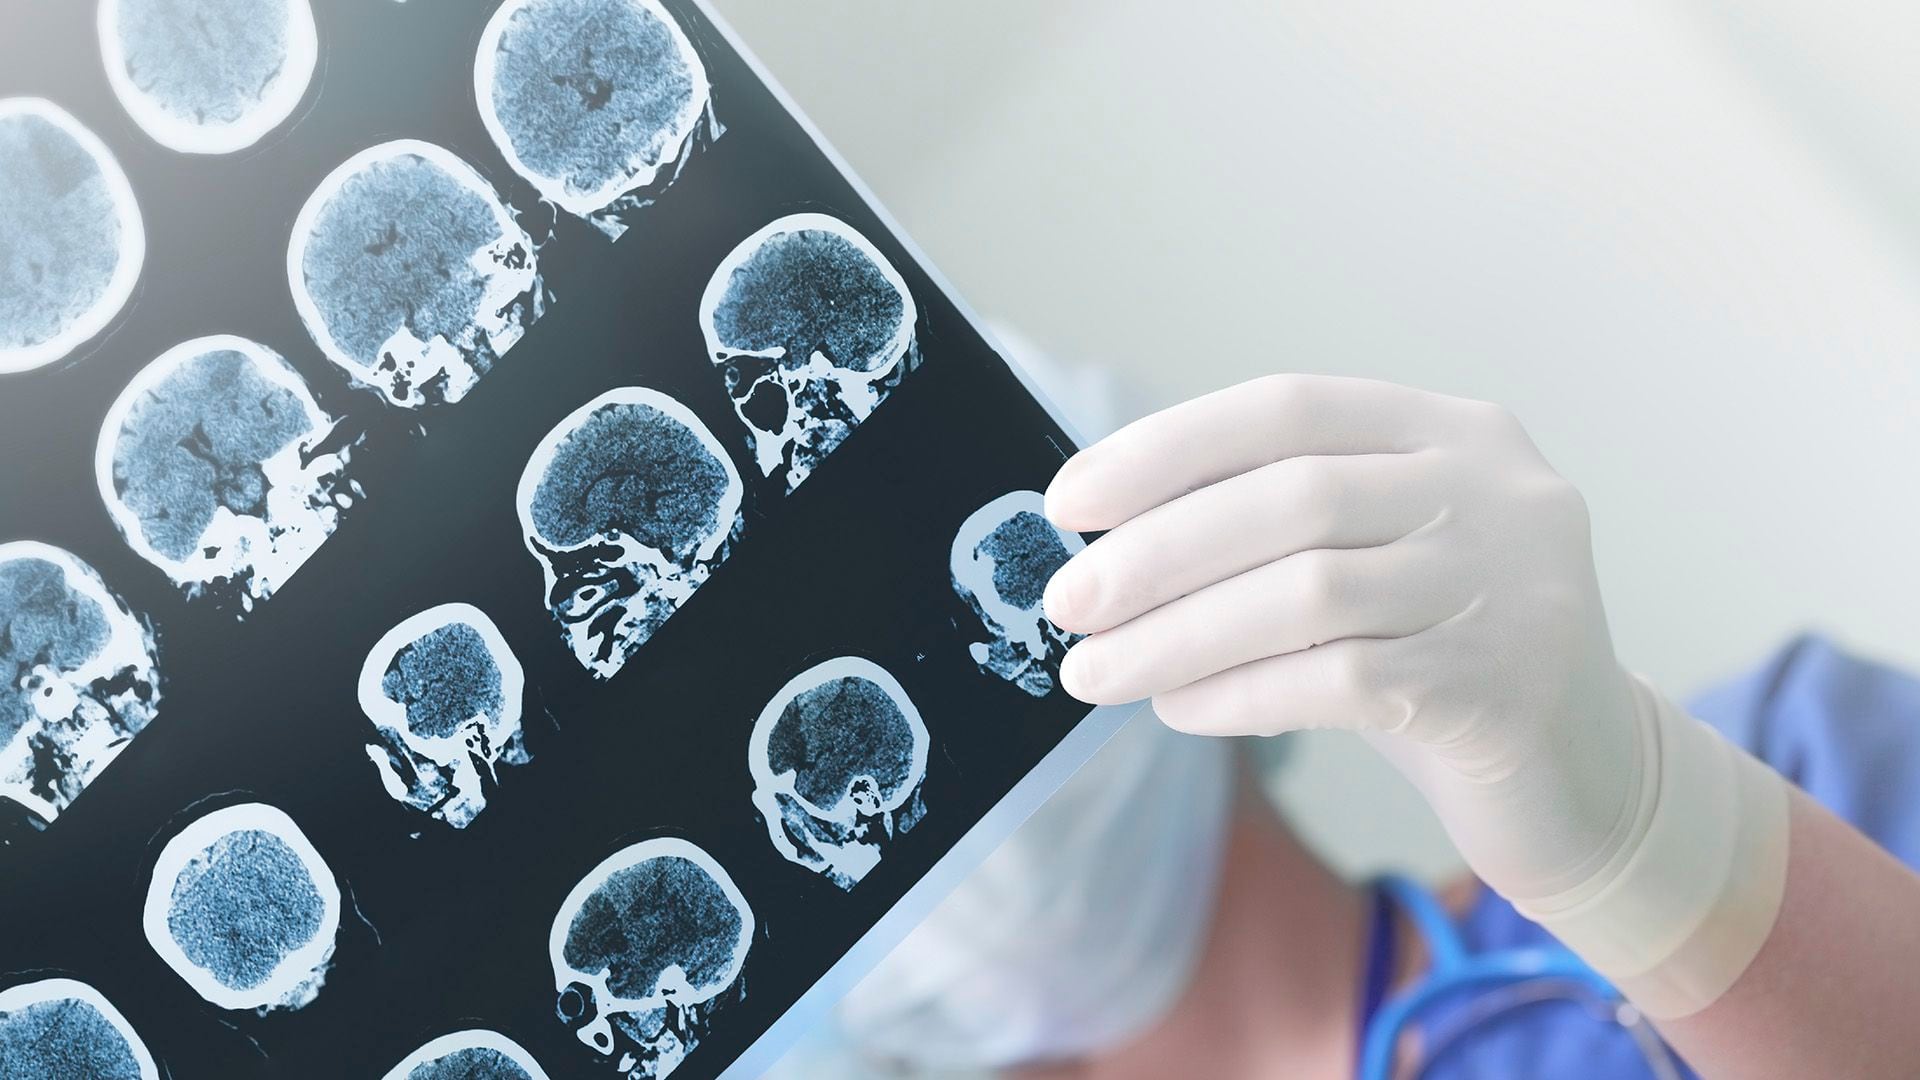 Los resultados del estudio muestran que la vacuna SAGP redujo significativamente los depósitos de amiloide en el tejido cerebral